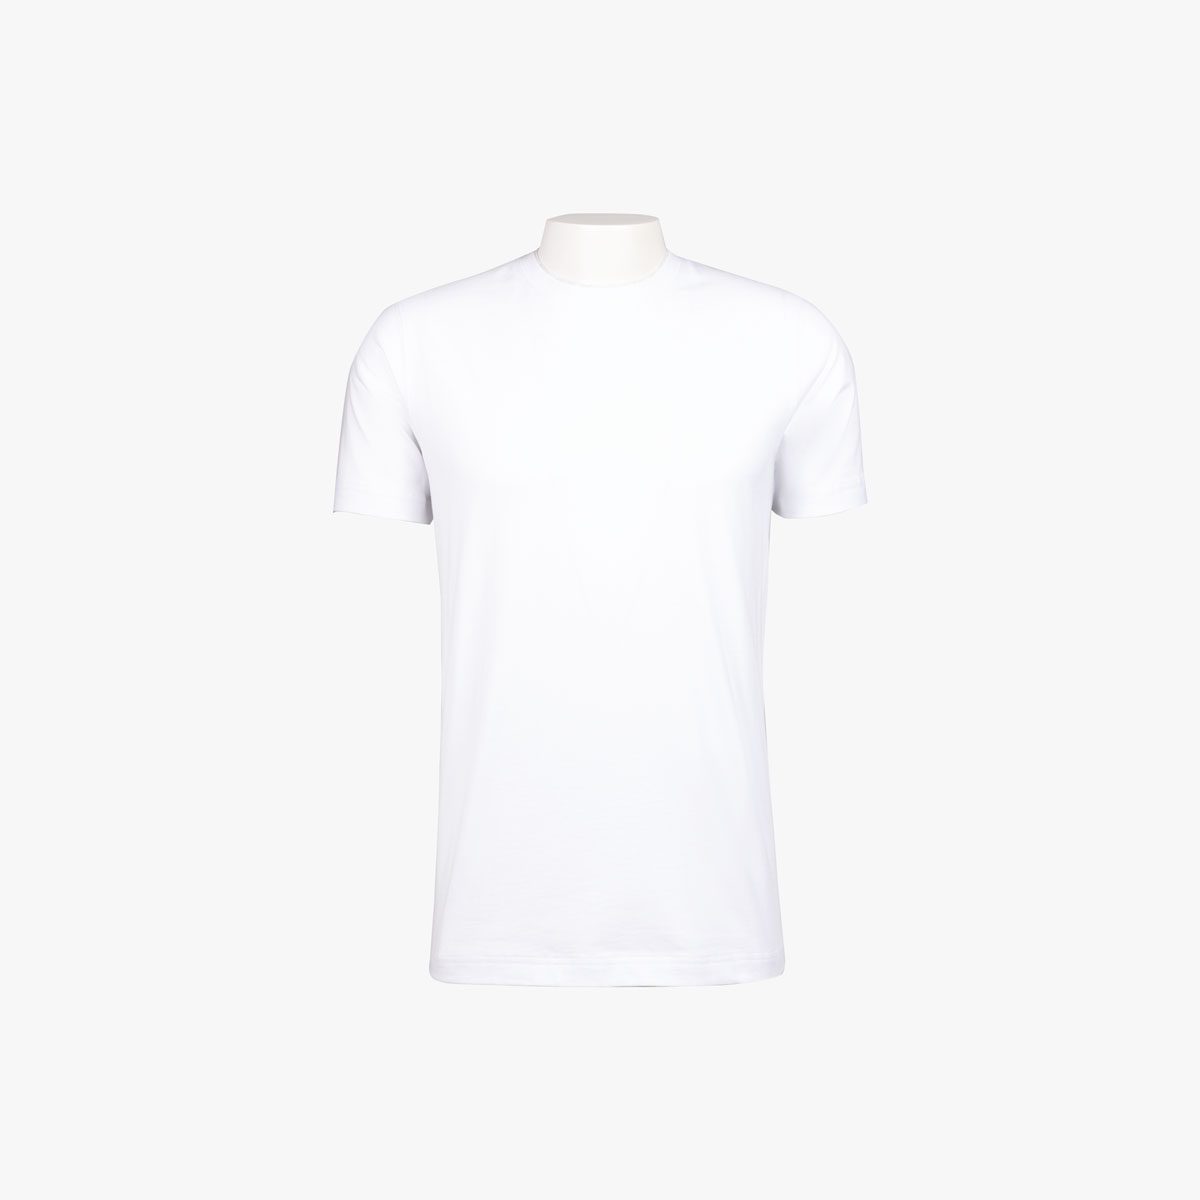 T-Shirt Rundhals in weiß-hellgrau